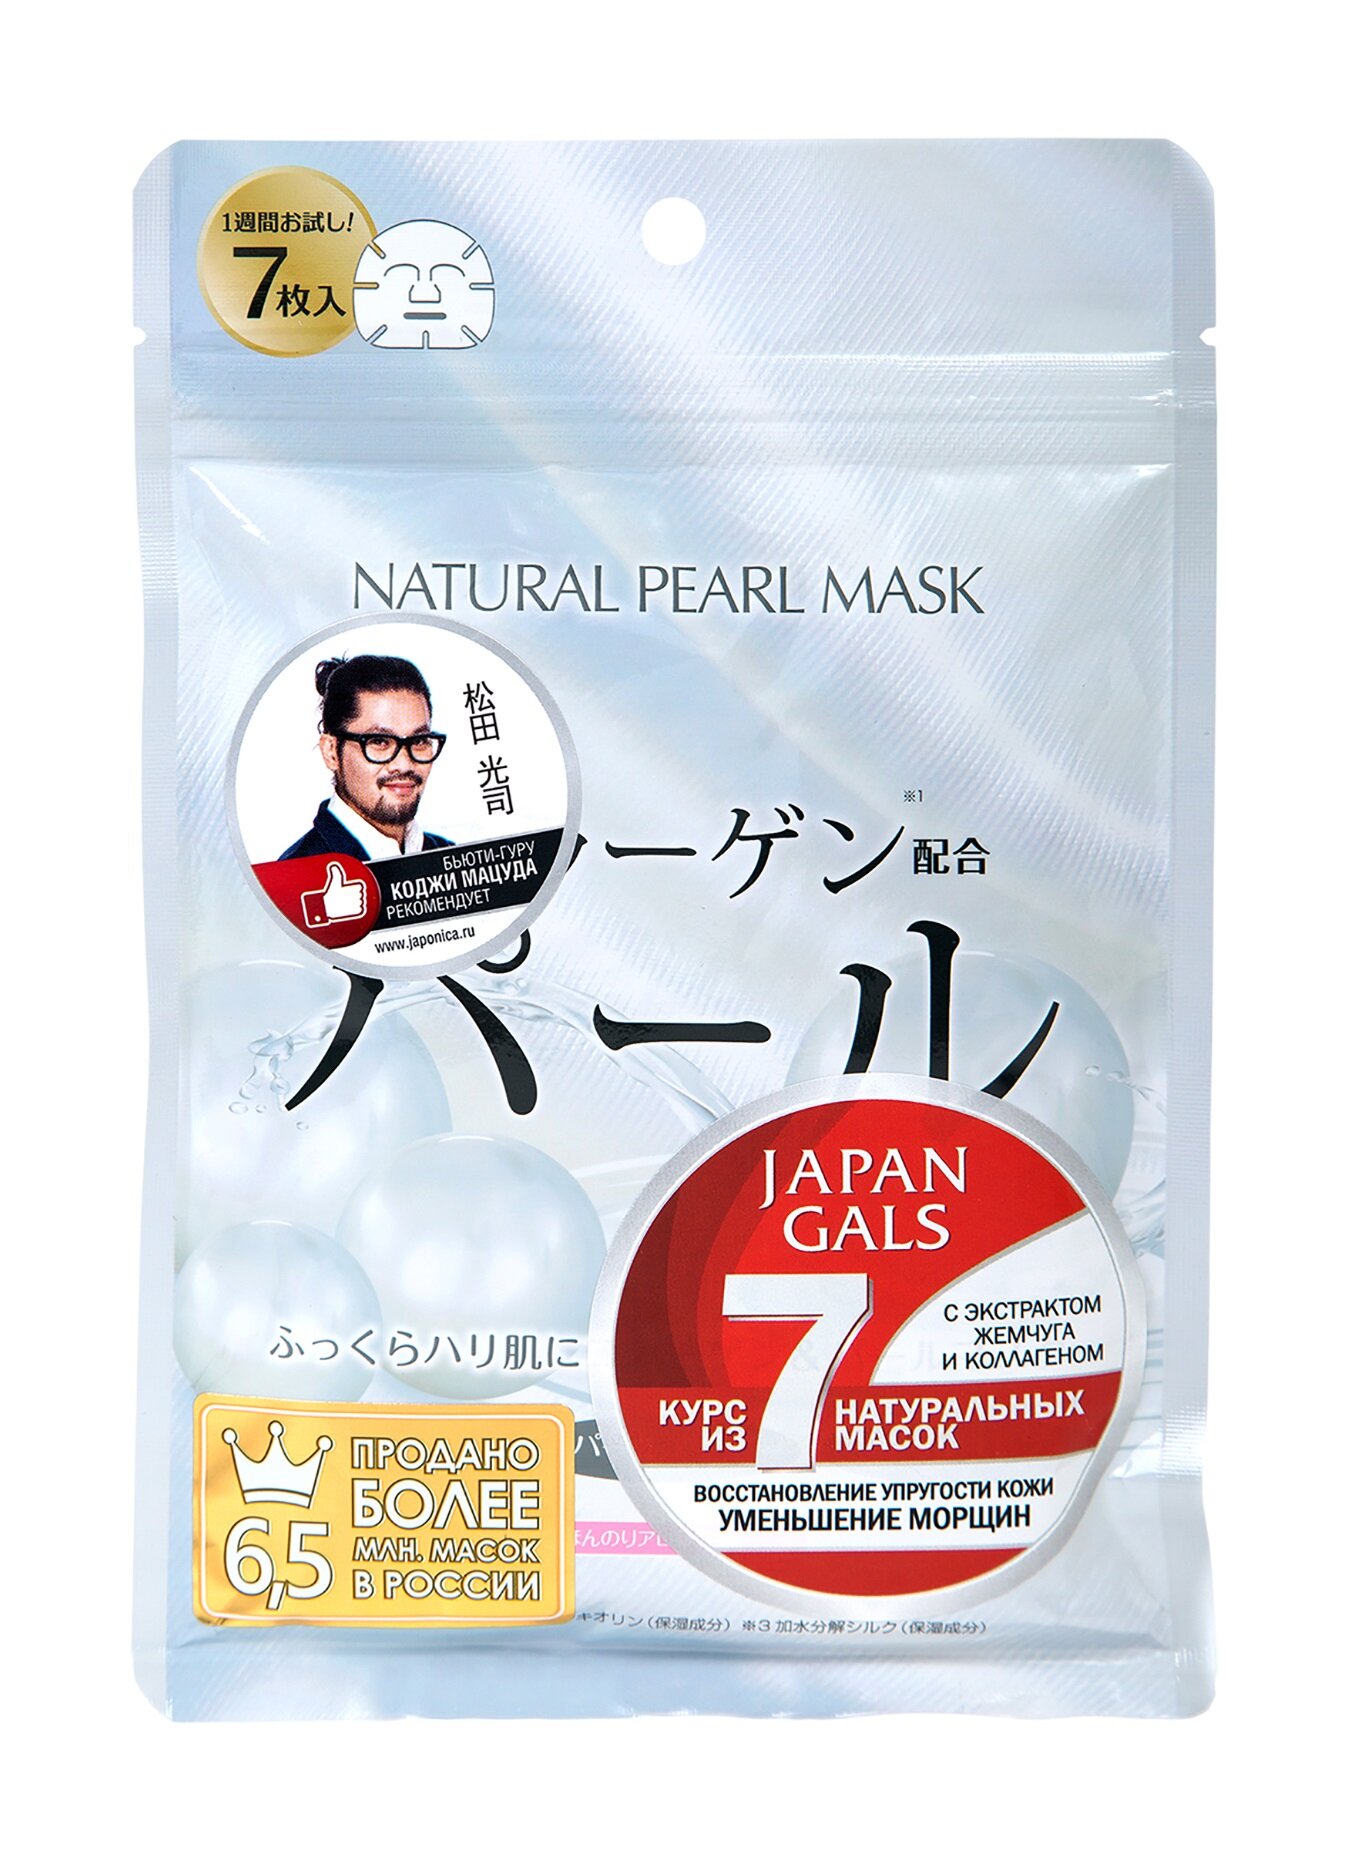 Набор из 7 натуральных масок для лица с экстрактом жемчуга и коллагеном Japan Gals Natural Pearl Mask 0,15 мл .